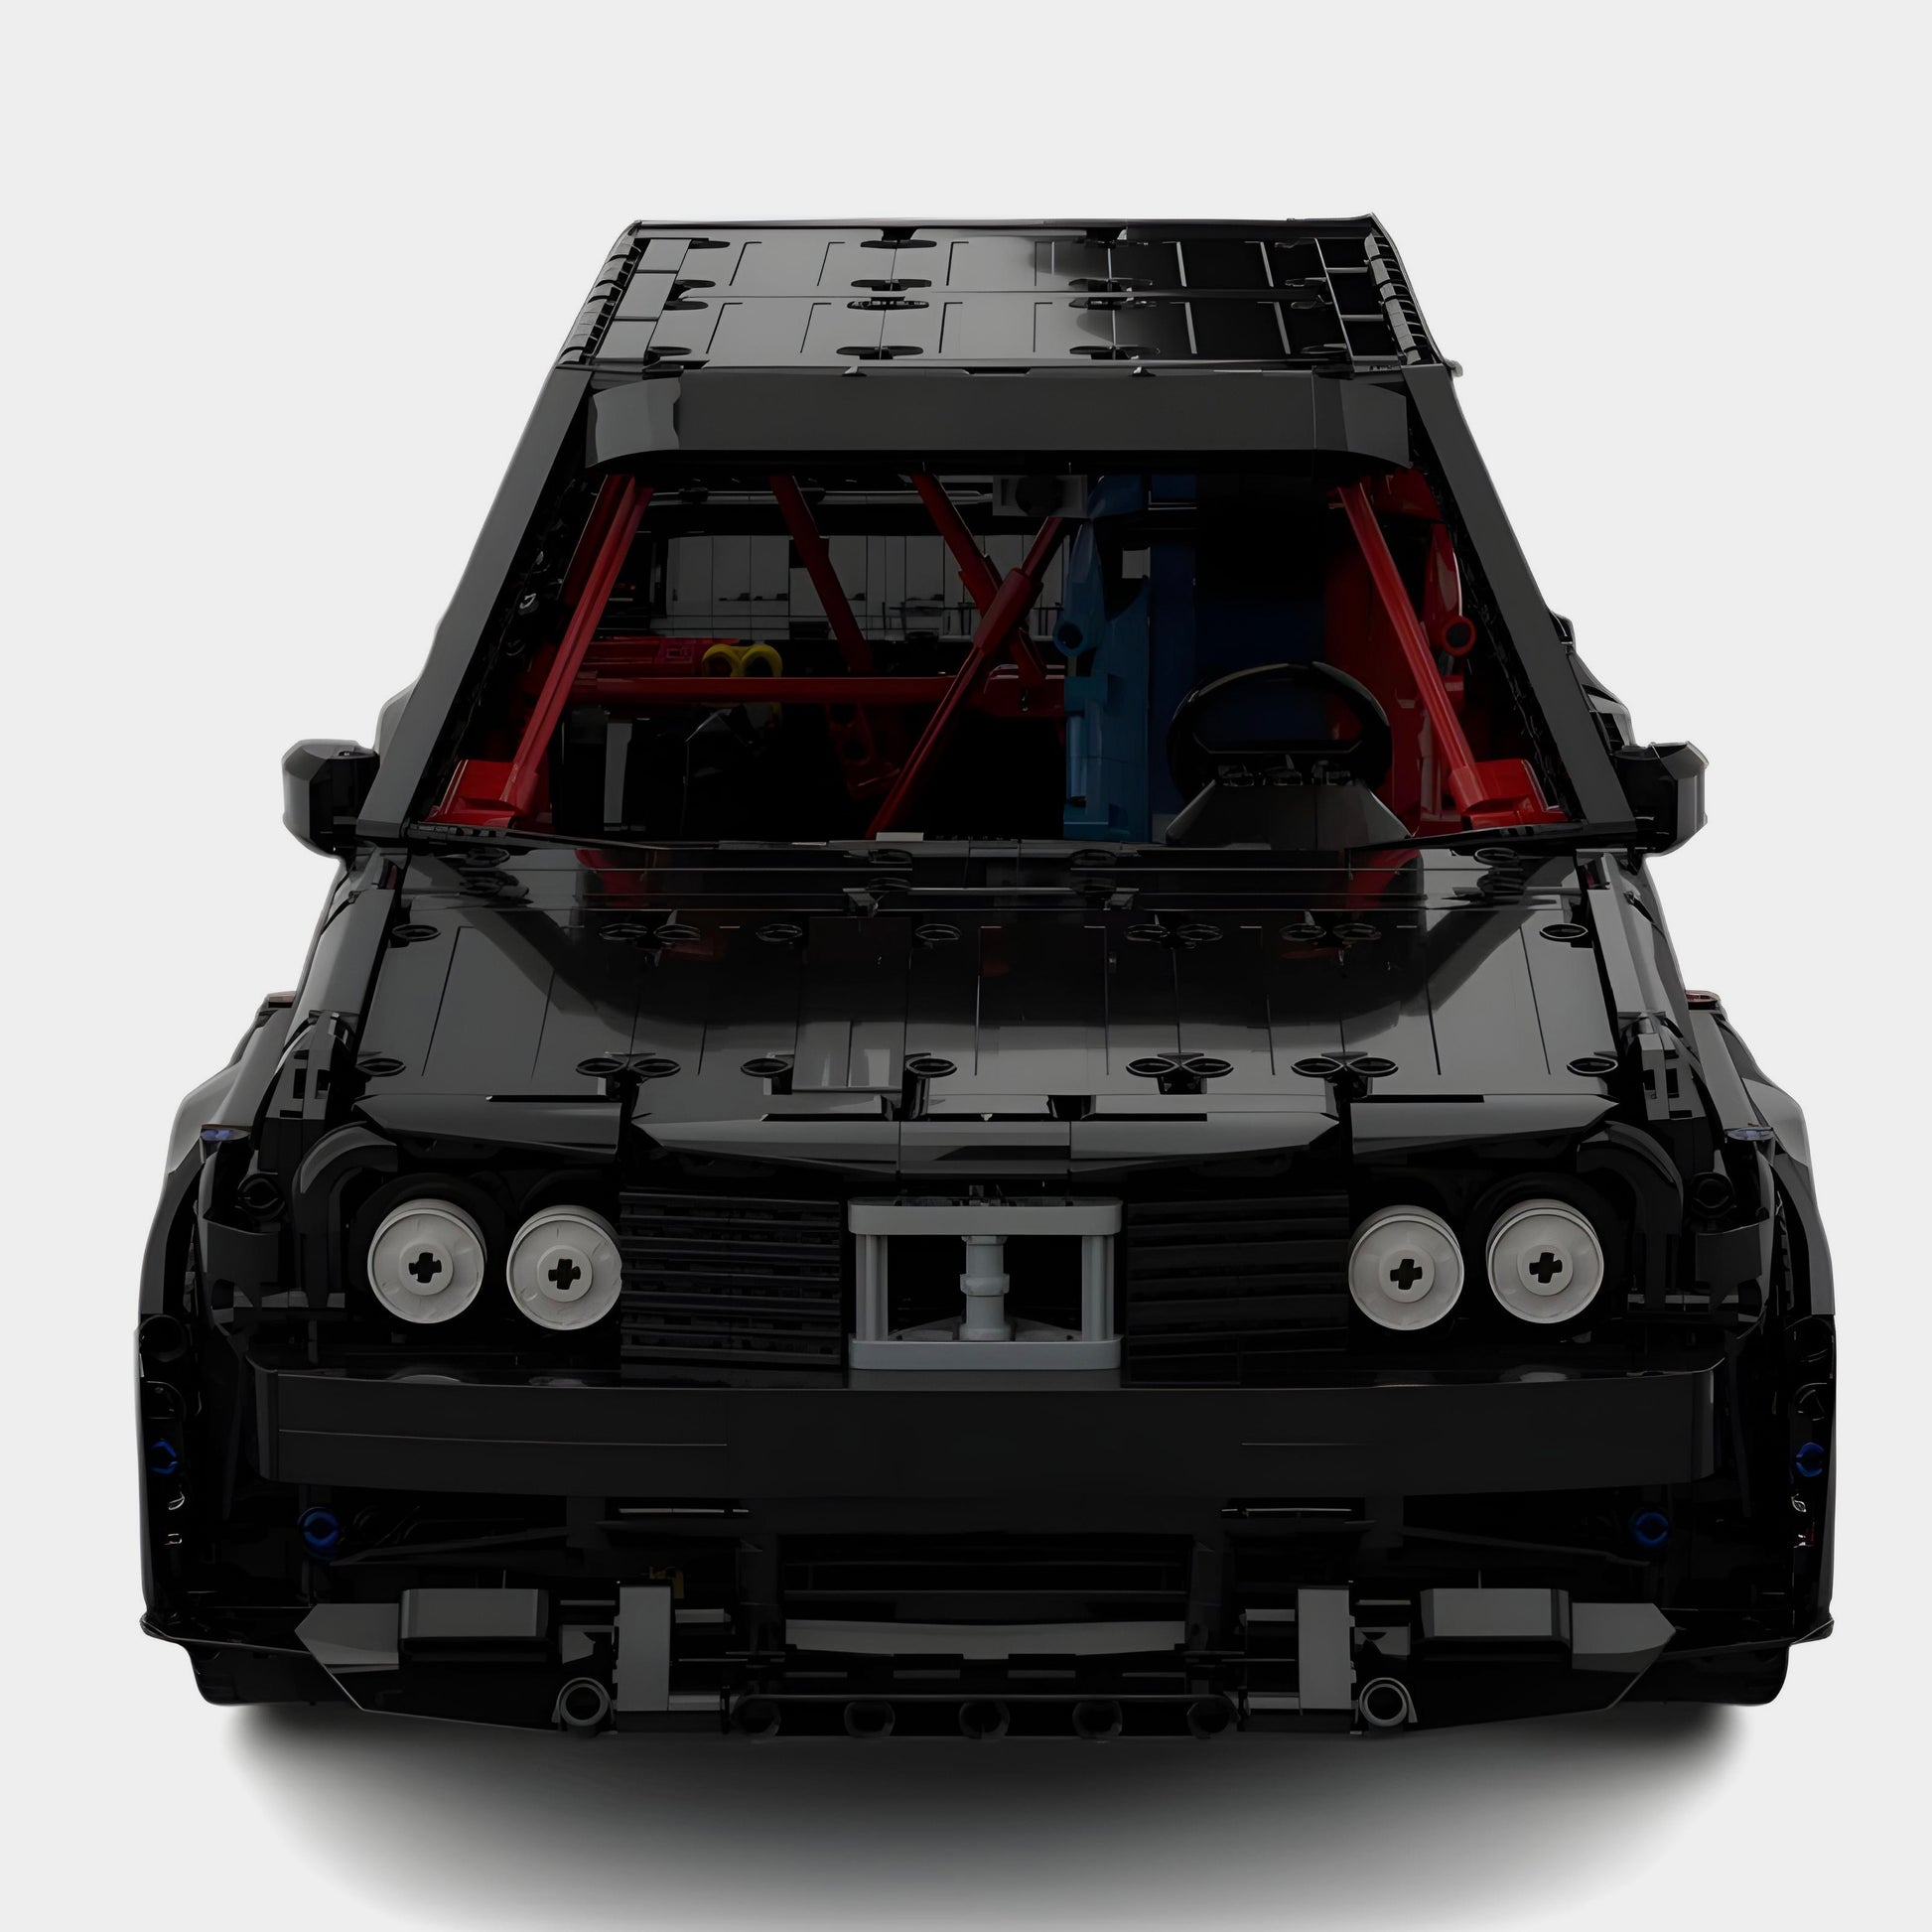 Photo 7 - 3/4 arrière BMW M3 E30 Lego noire - La BMW M3 E30